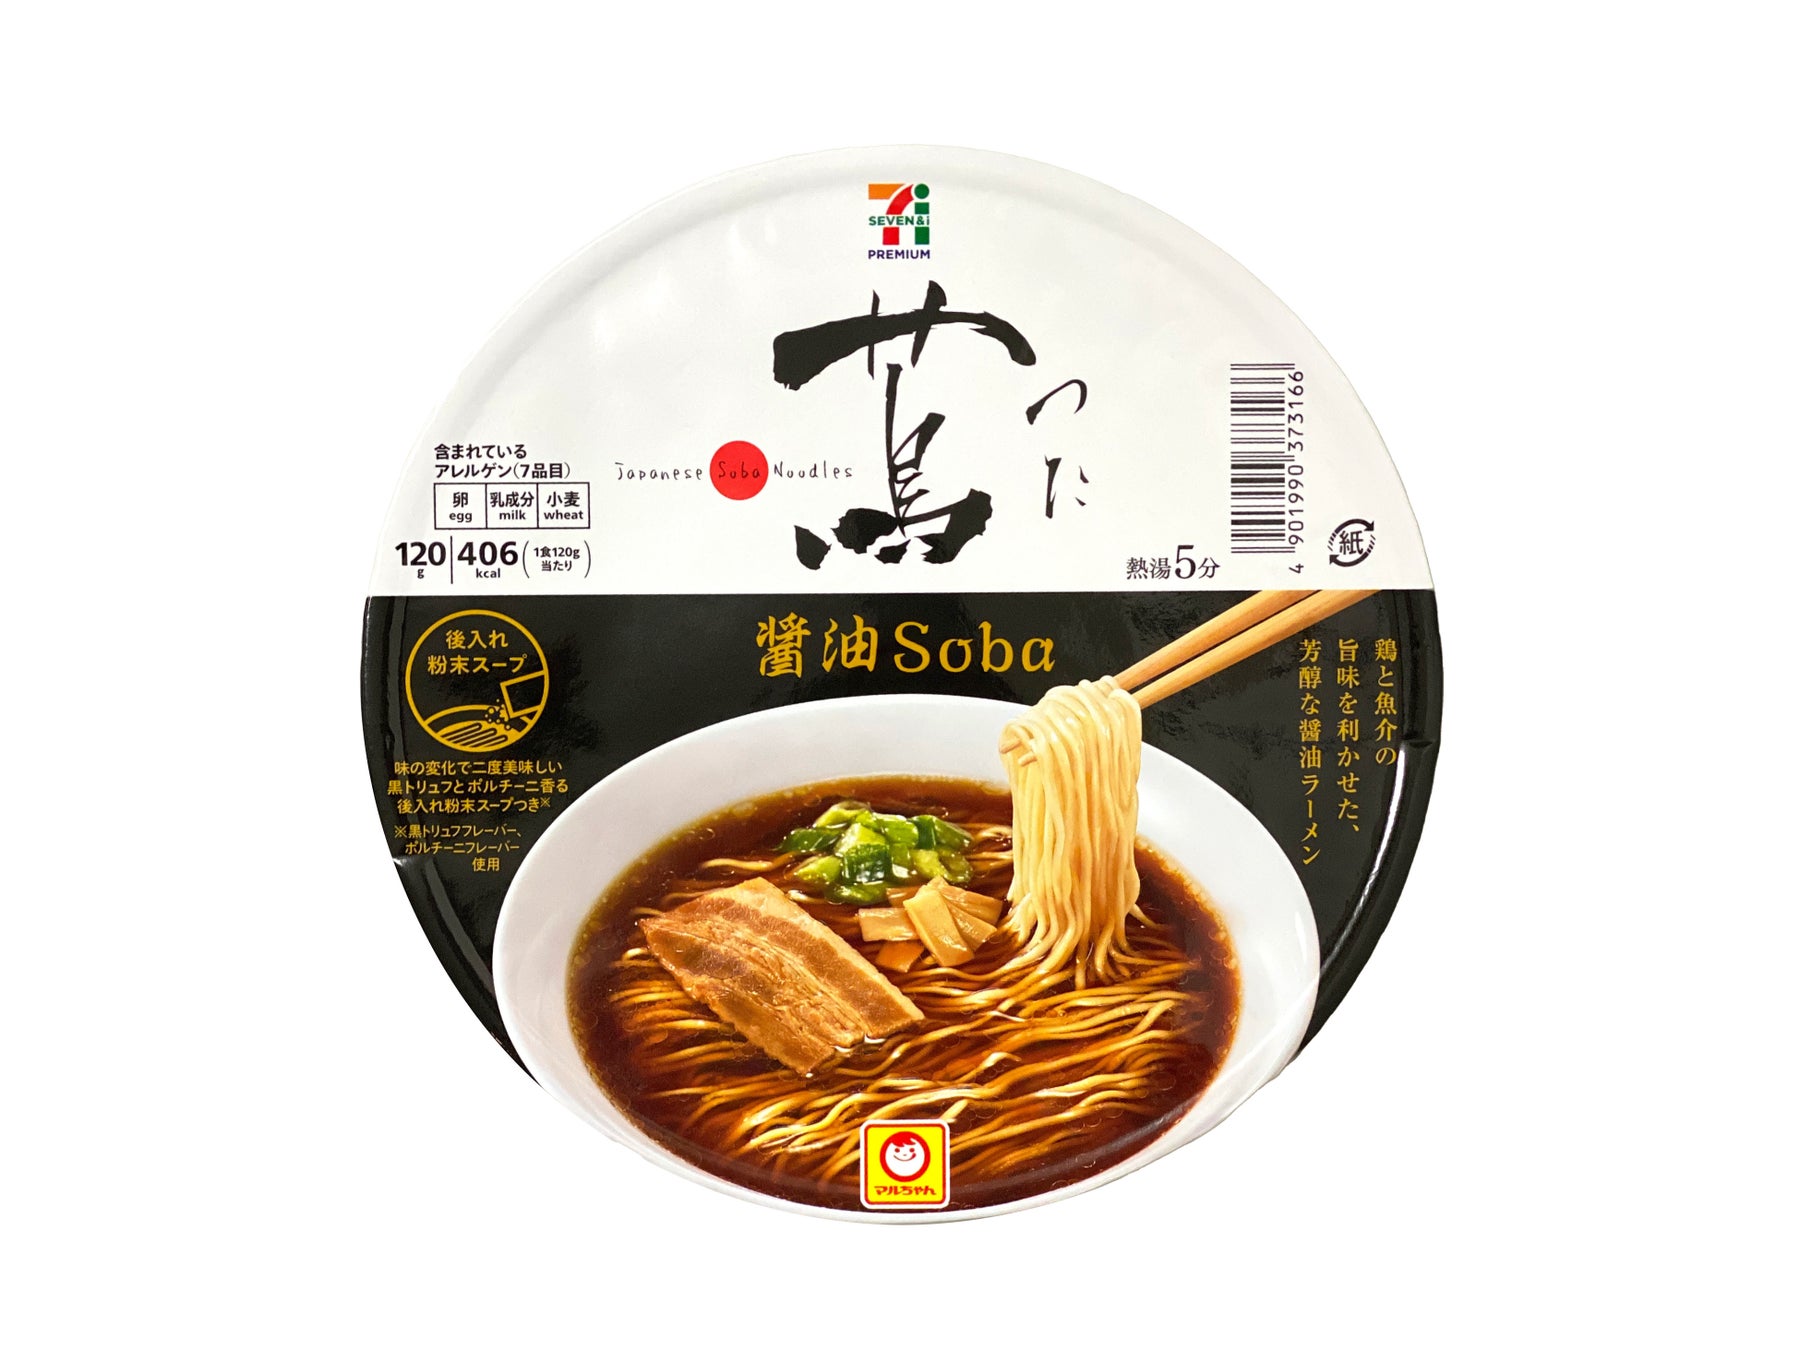 世界初のミシュラン一つ星を獲得したラーメン店、Japanese Soba Noodles 蔦の味を再現！「セブンプレミアム 蔦 醤油Soba」が２年ぶりにリニューアル発売スタート！